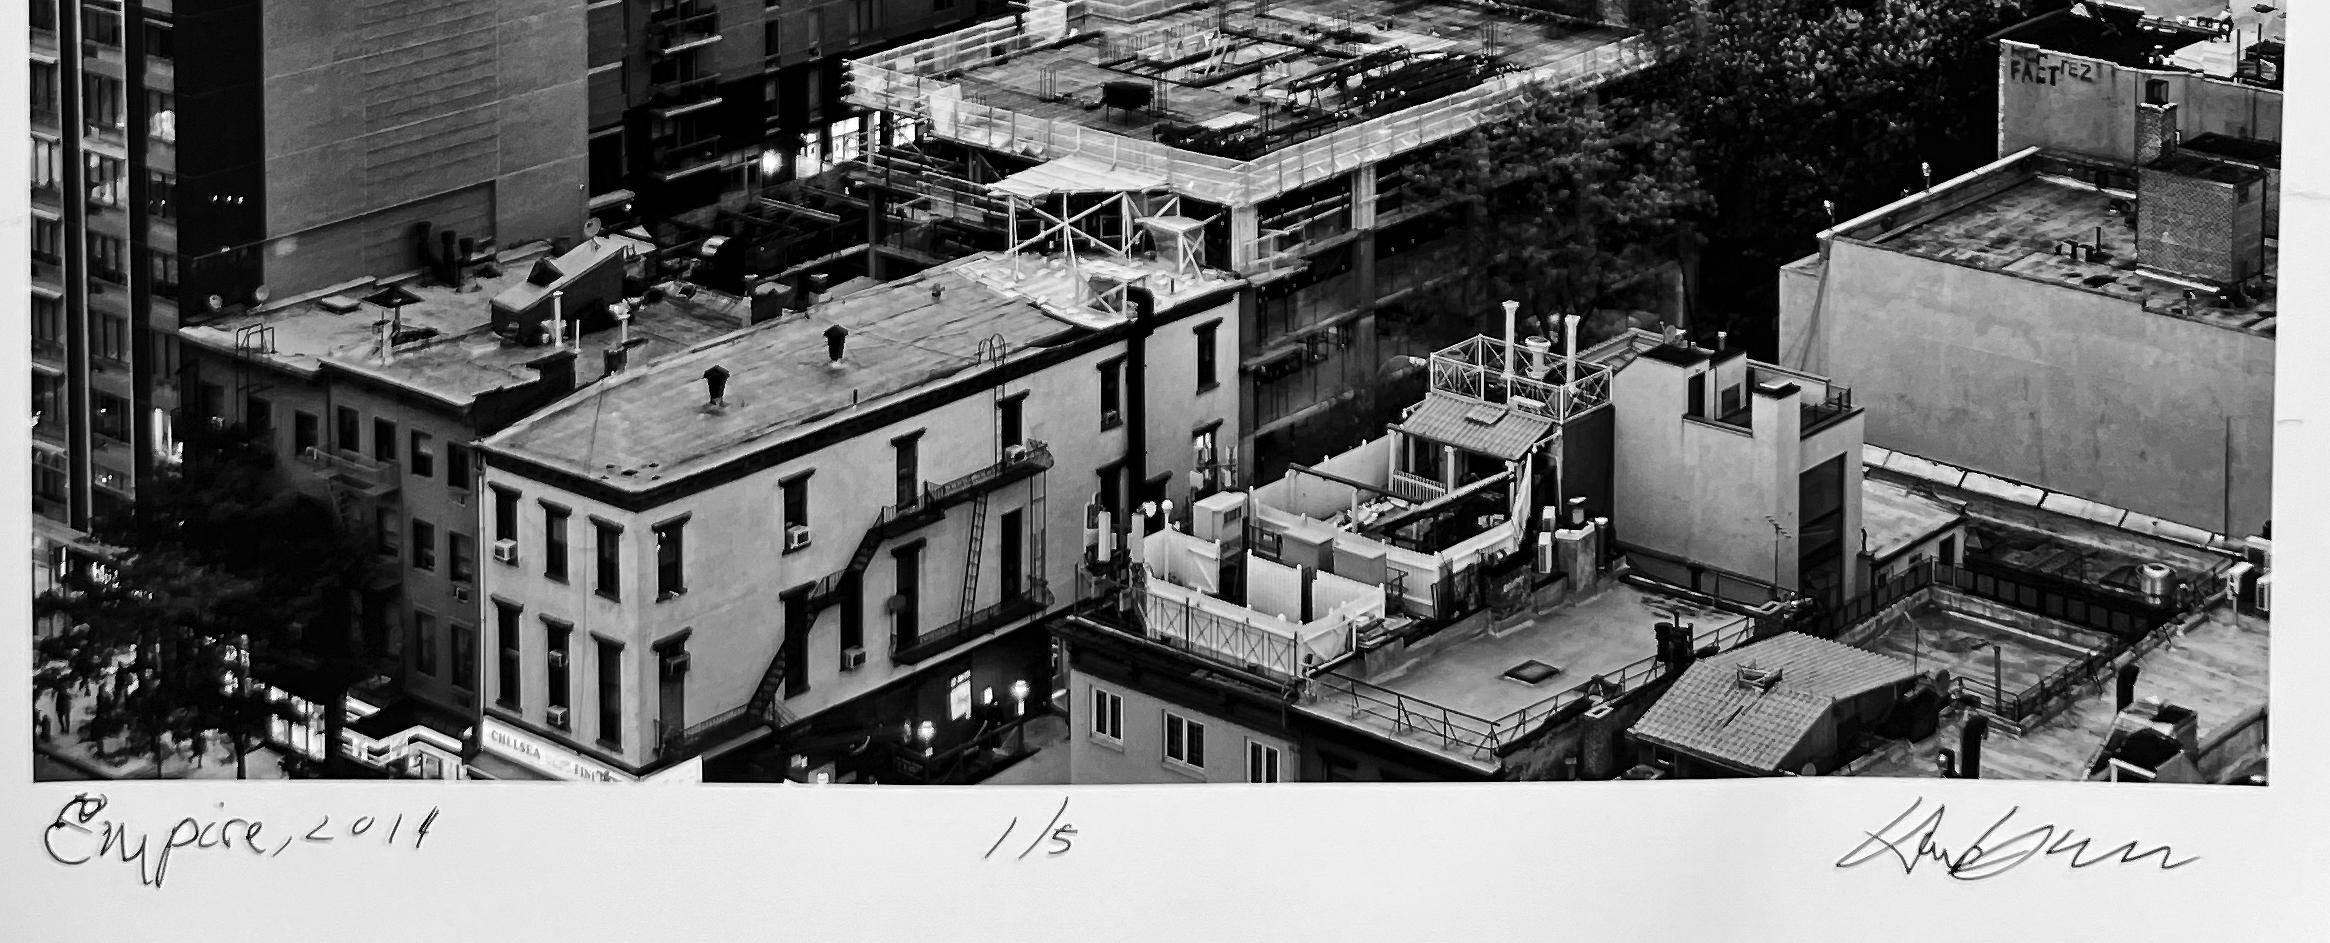 Empire, New York City, Dokumentar-Landschaftsfotografie in Schwarz-Weiß (Zeitgenössisch), Photograph, von Hank Gans